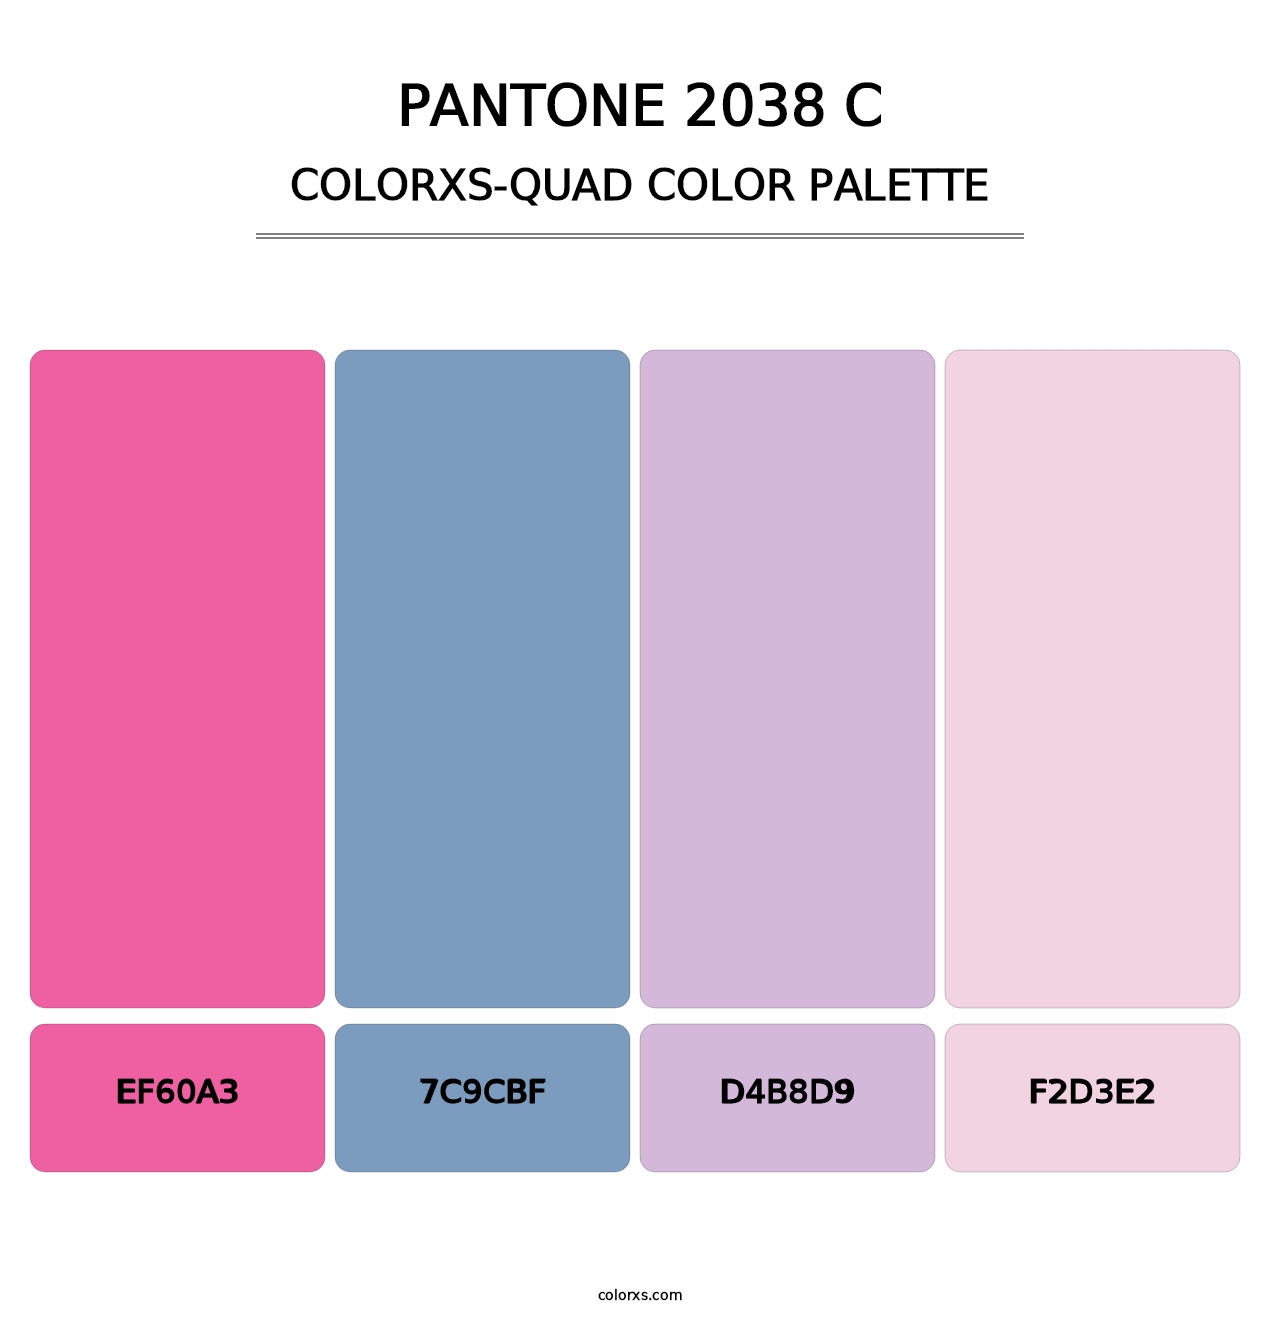 PANTONE 2038 C - Colorxs Quad Palette